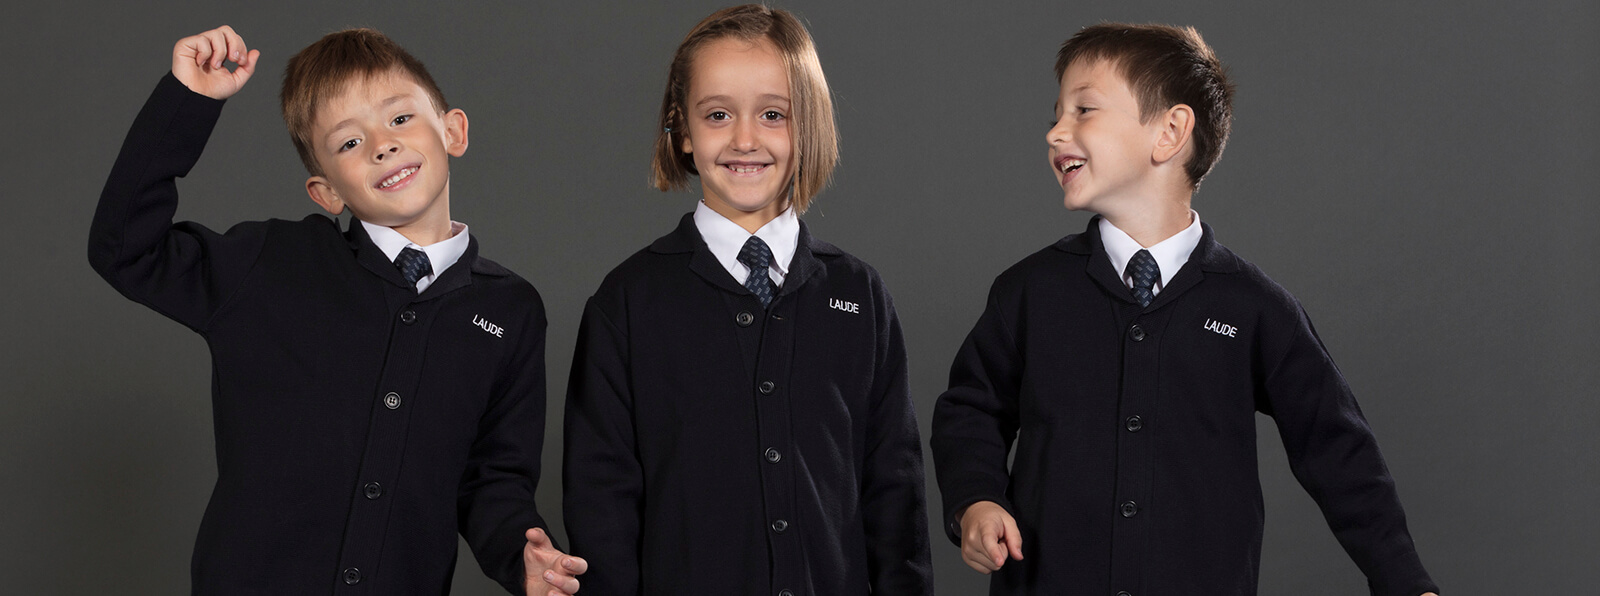 diseño-calidad-uniformes-escolares